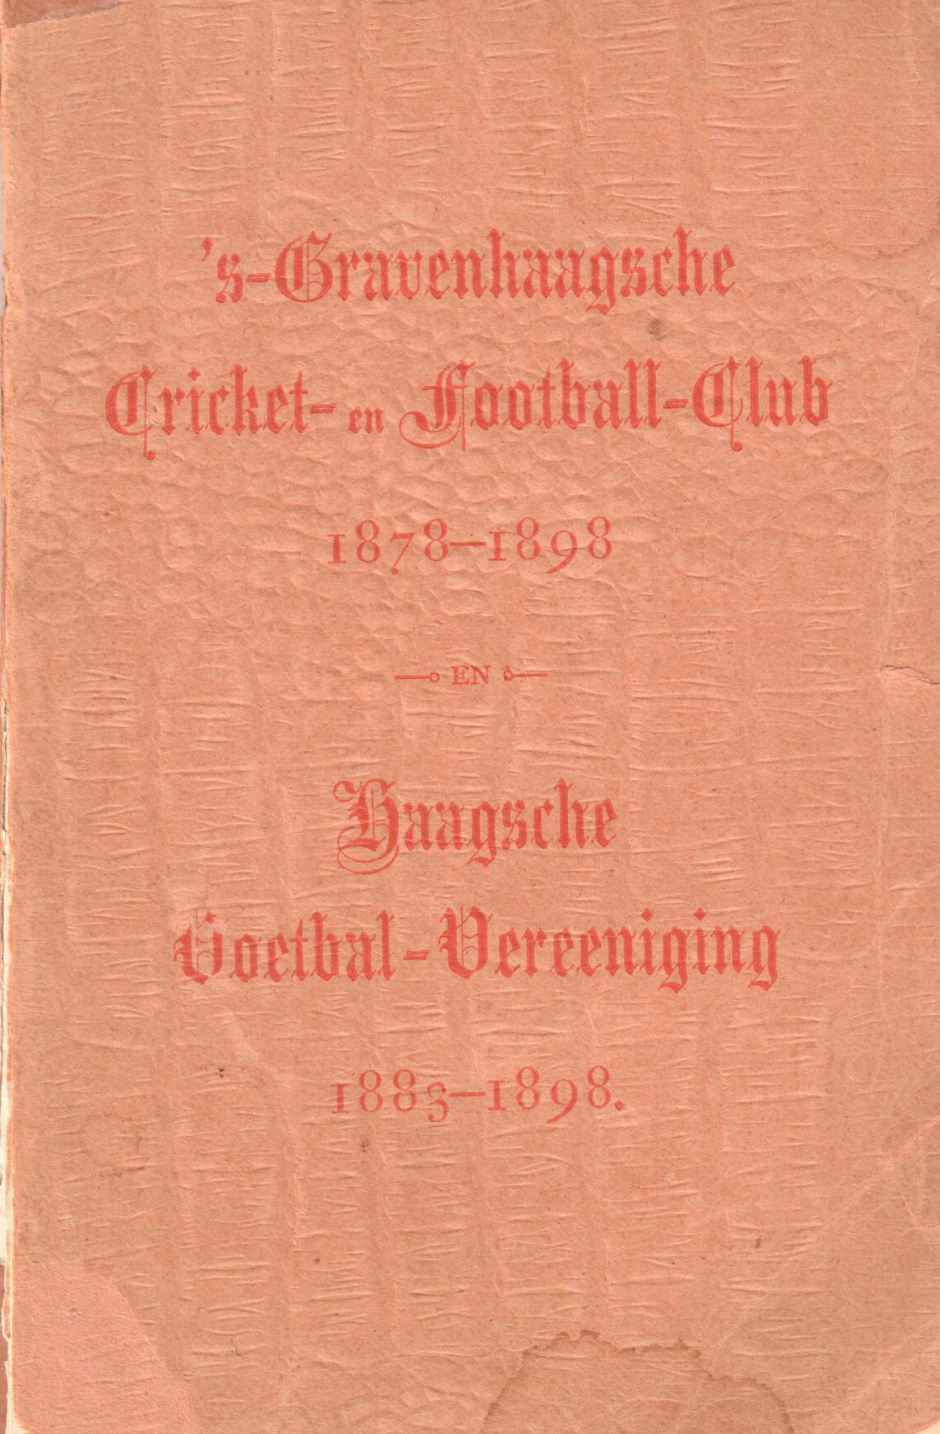 's-Gravenhaagsche Cricket- en Football-Club 1878-1898 en Haagsche Voetbal-Vereeniging 1883-1898﻿